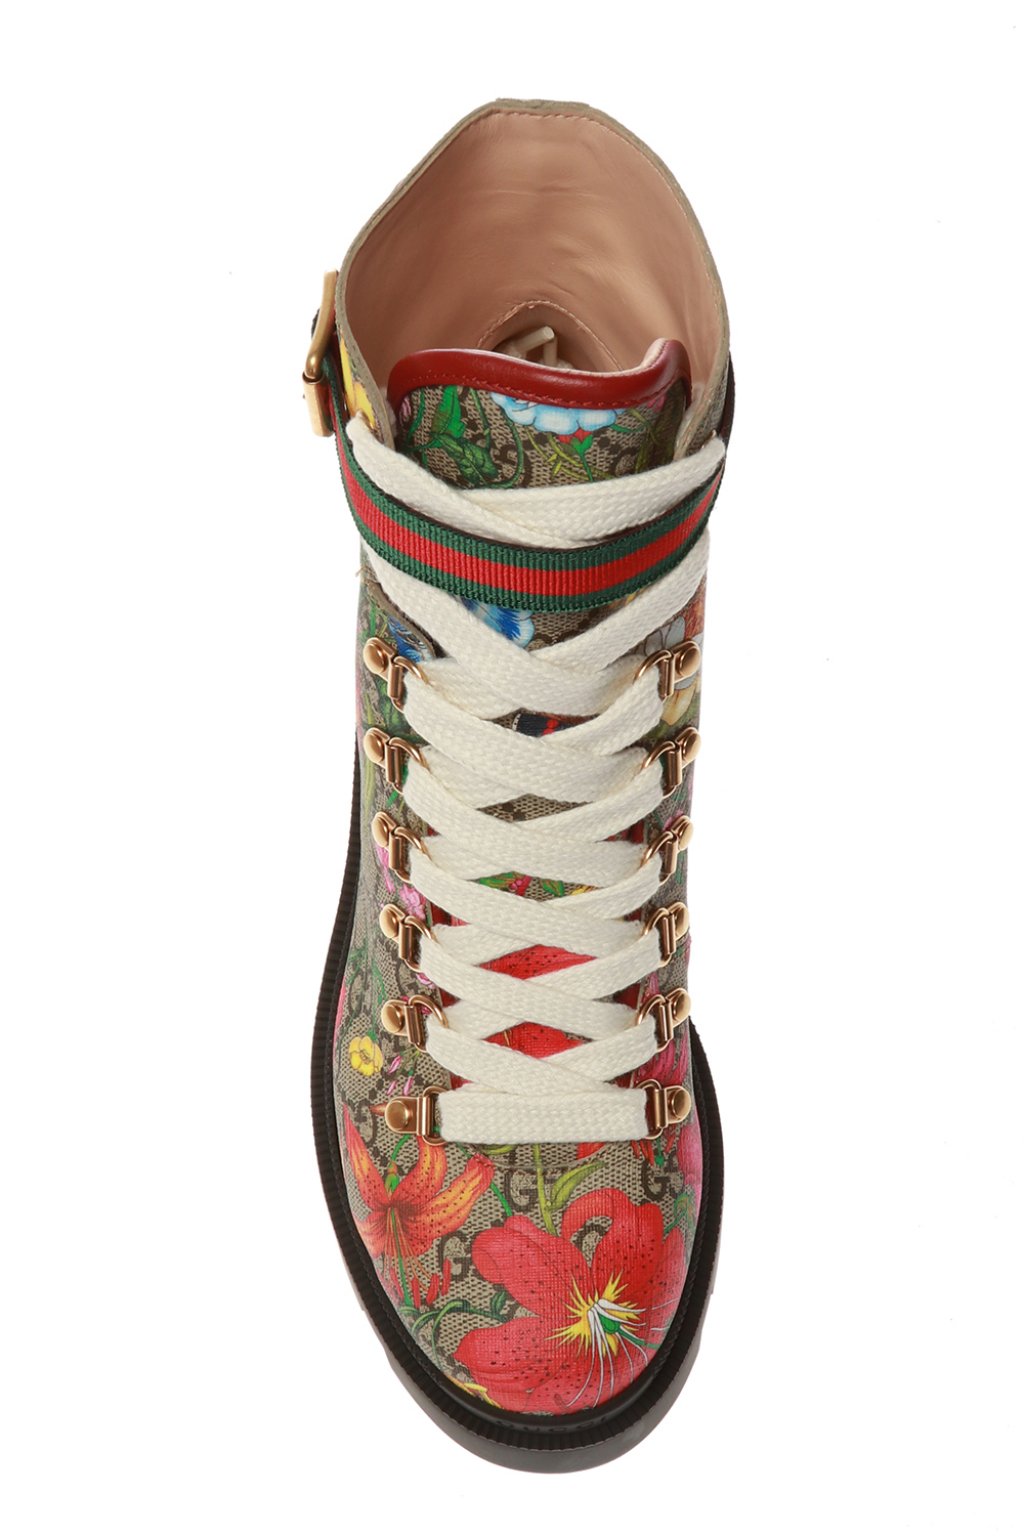 boots gucci flora